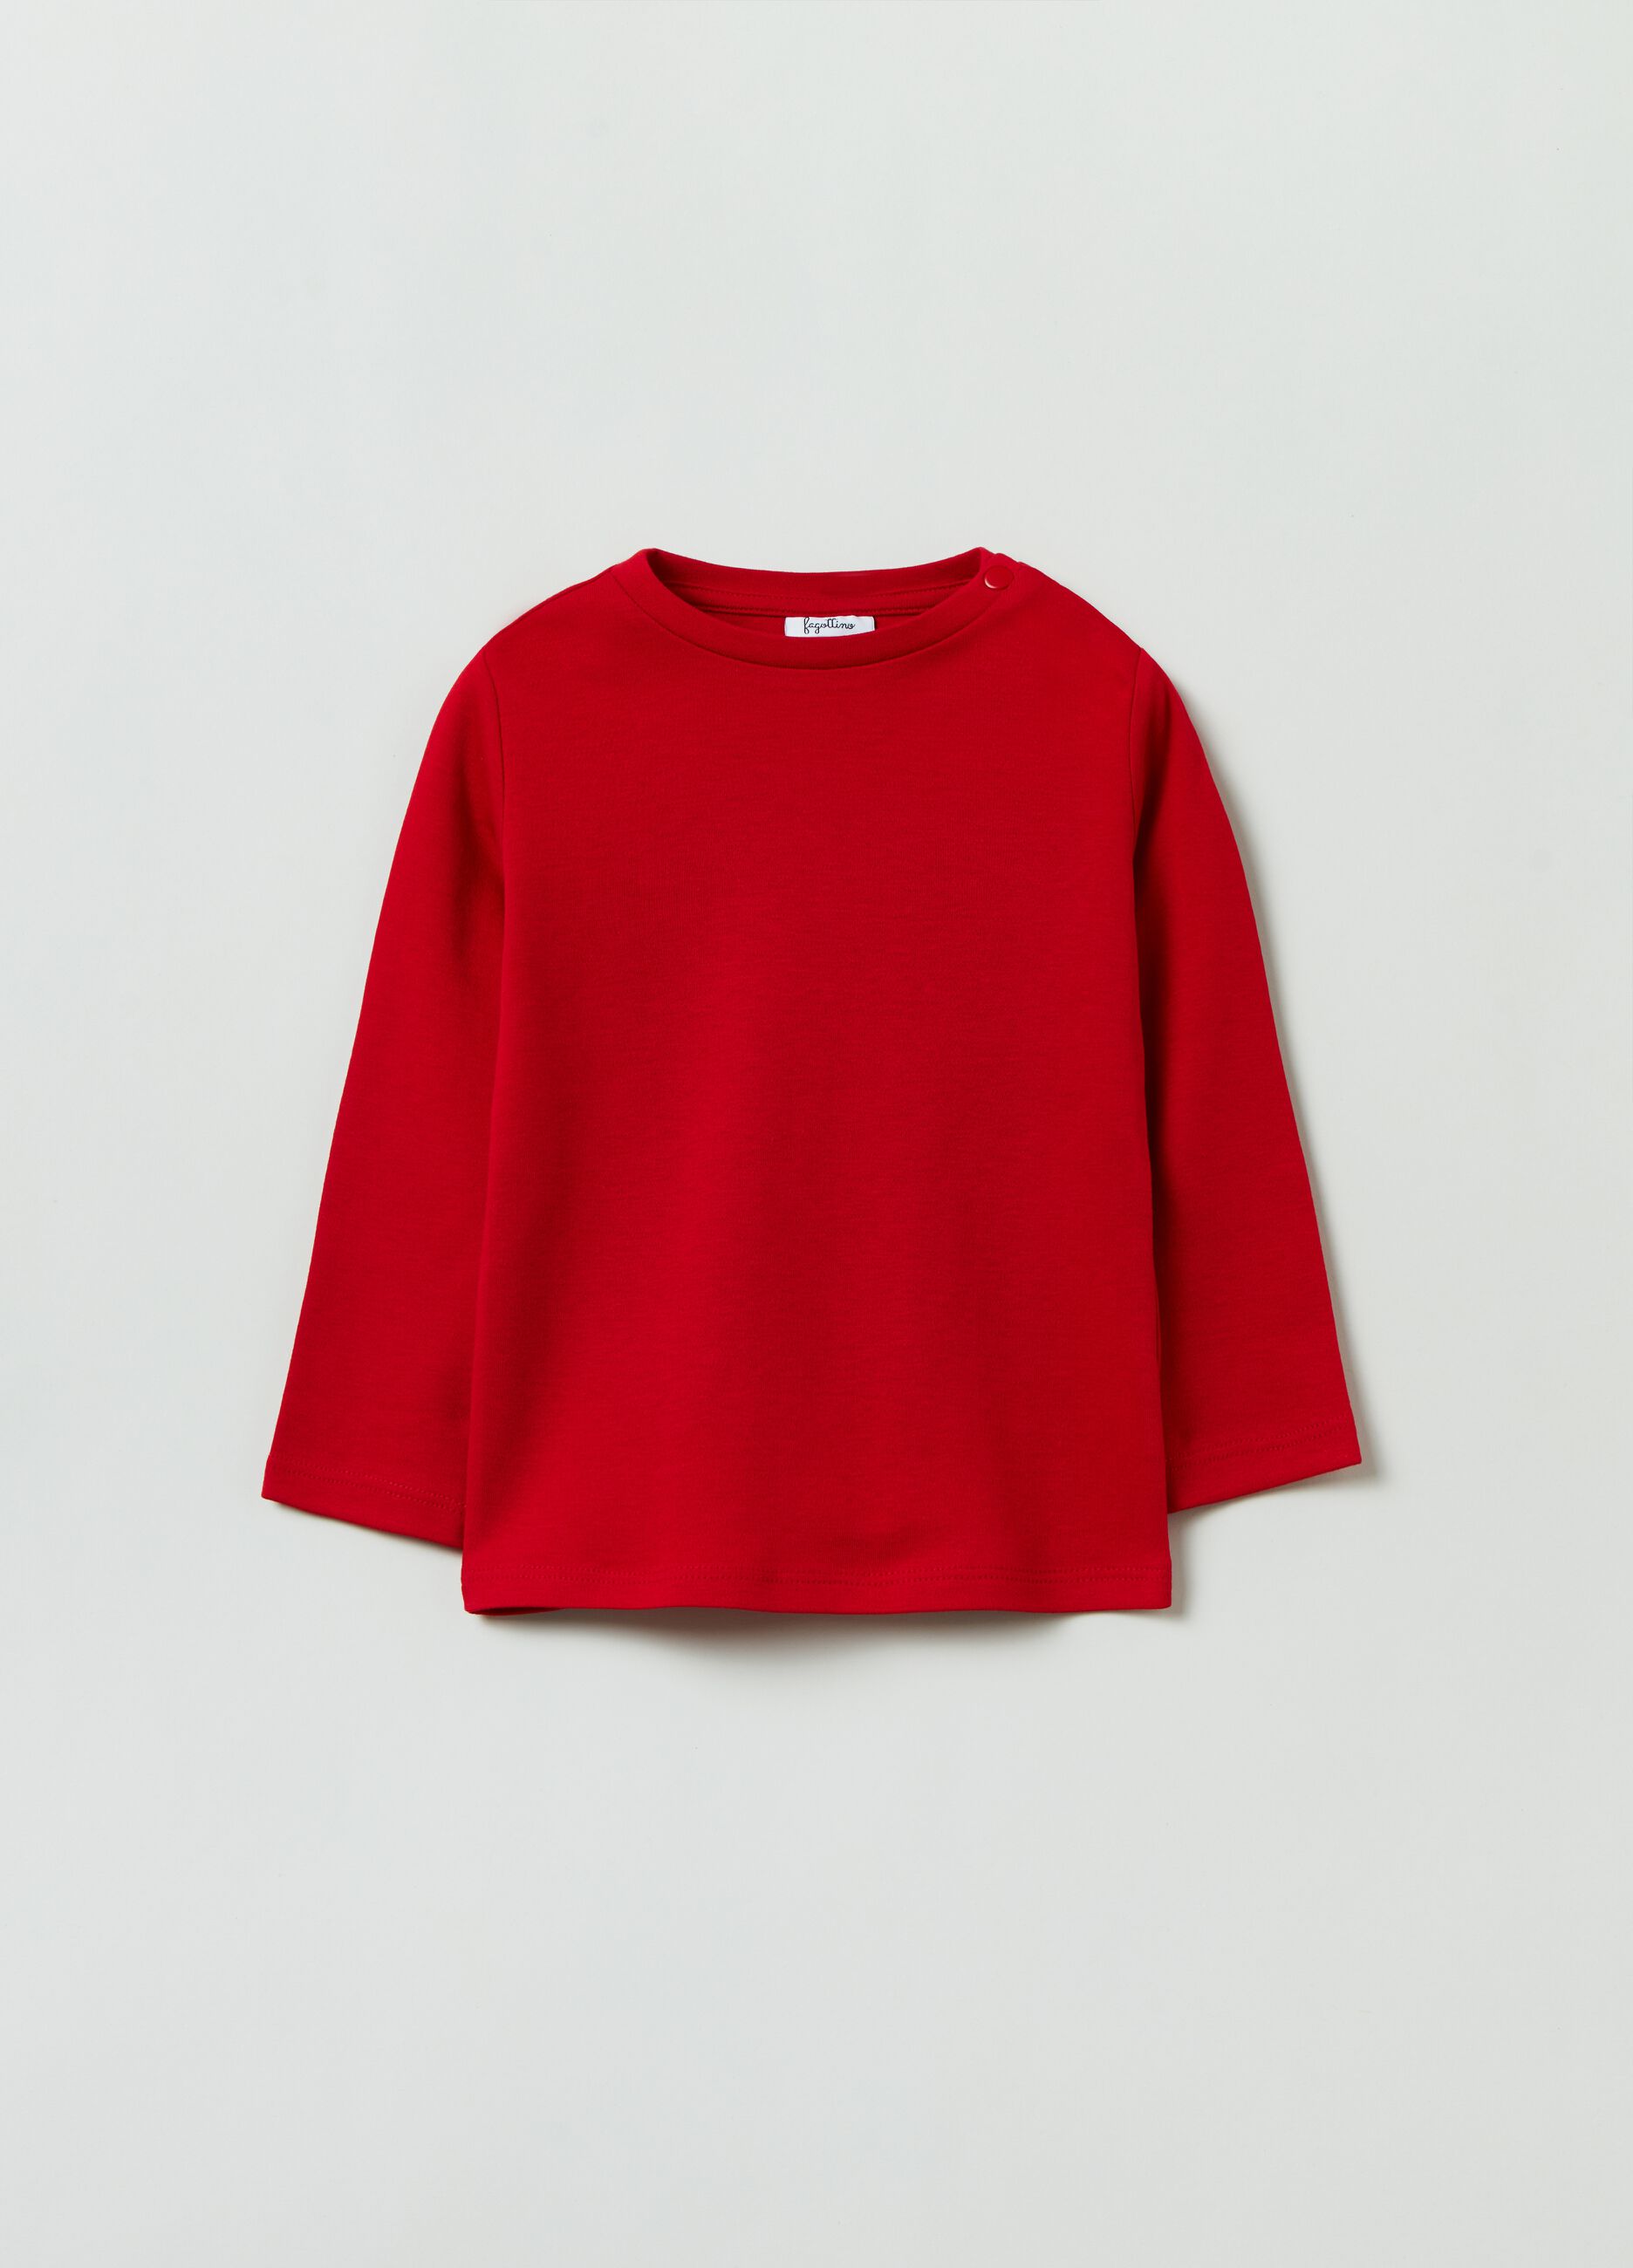 Camiseta roja de algodón manga larga